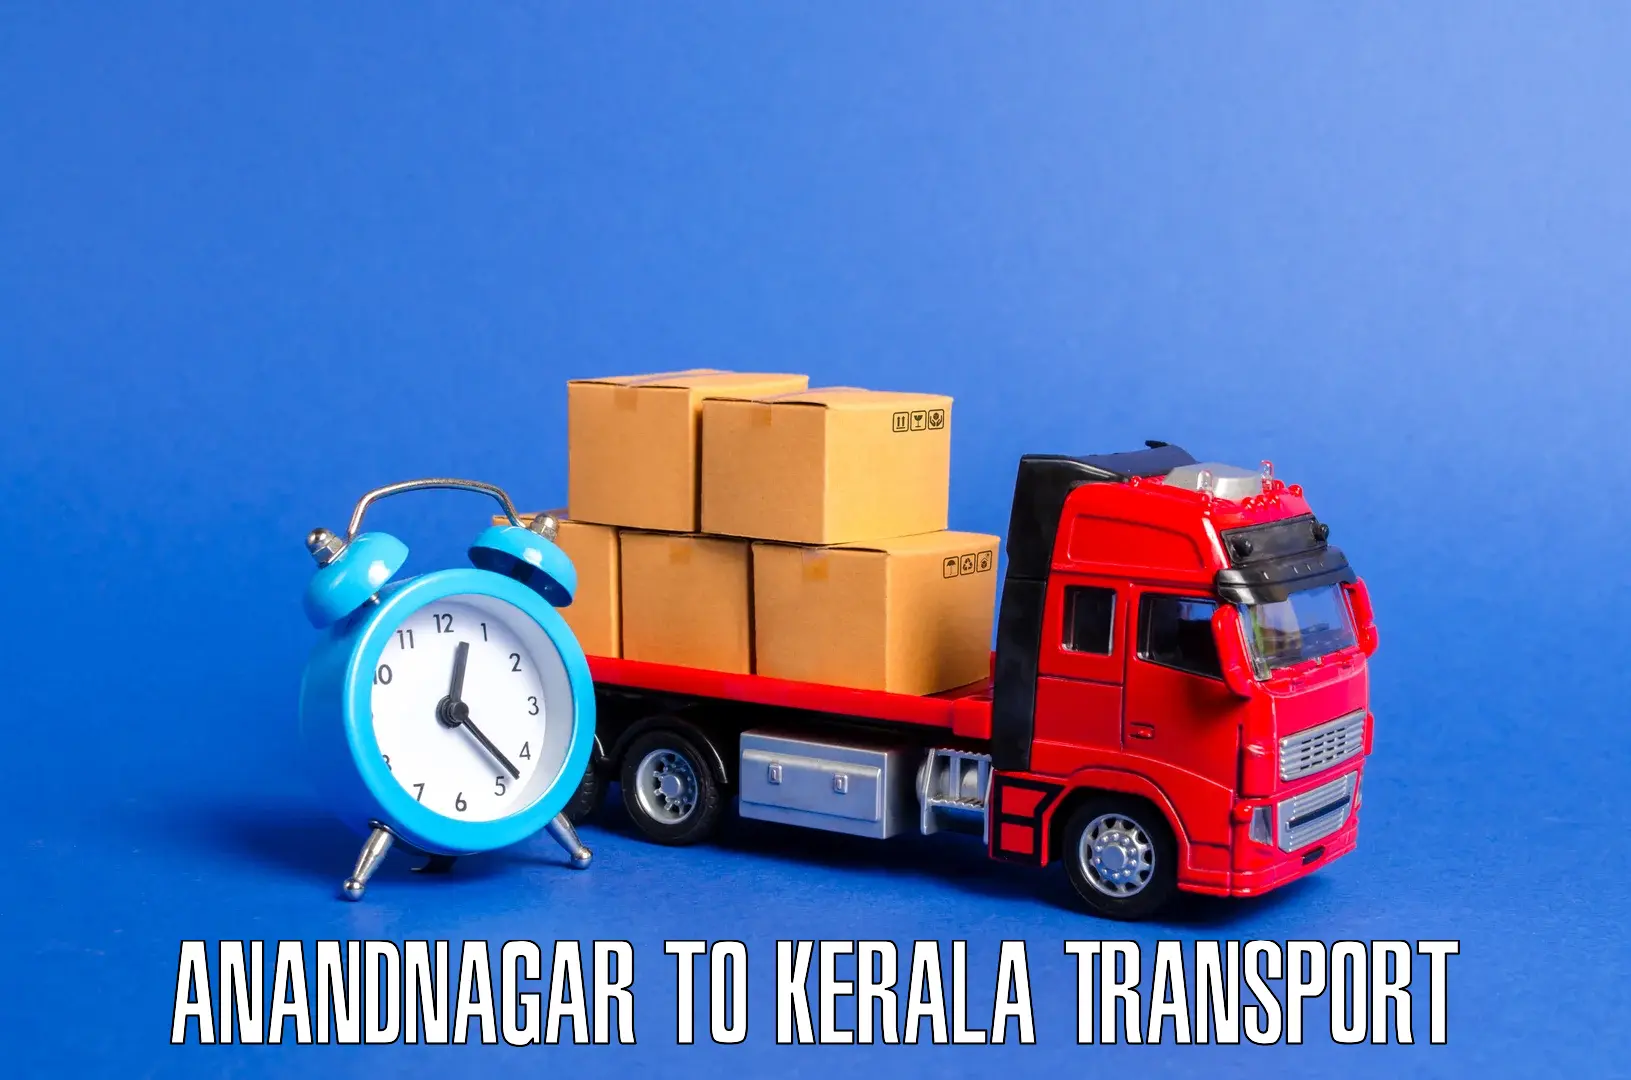 Shipping services Anandnagar to Kalanjoor